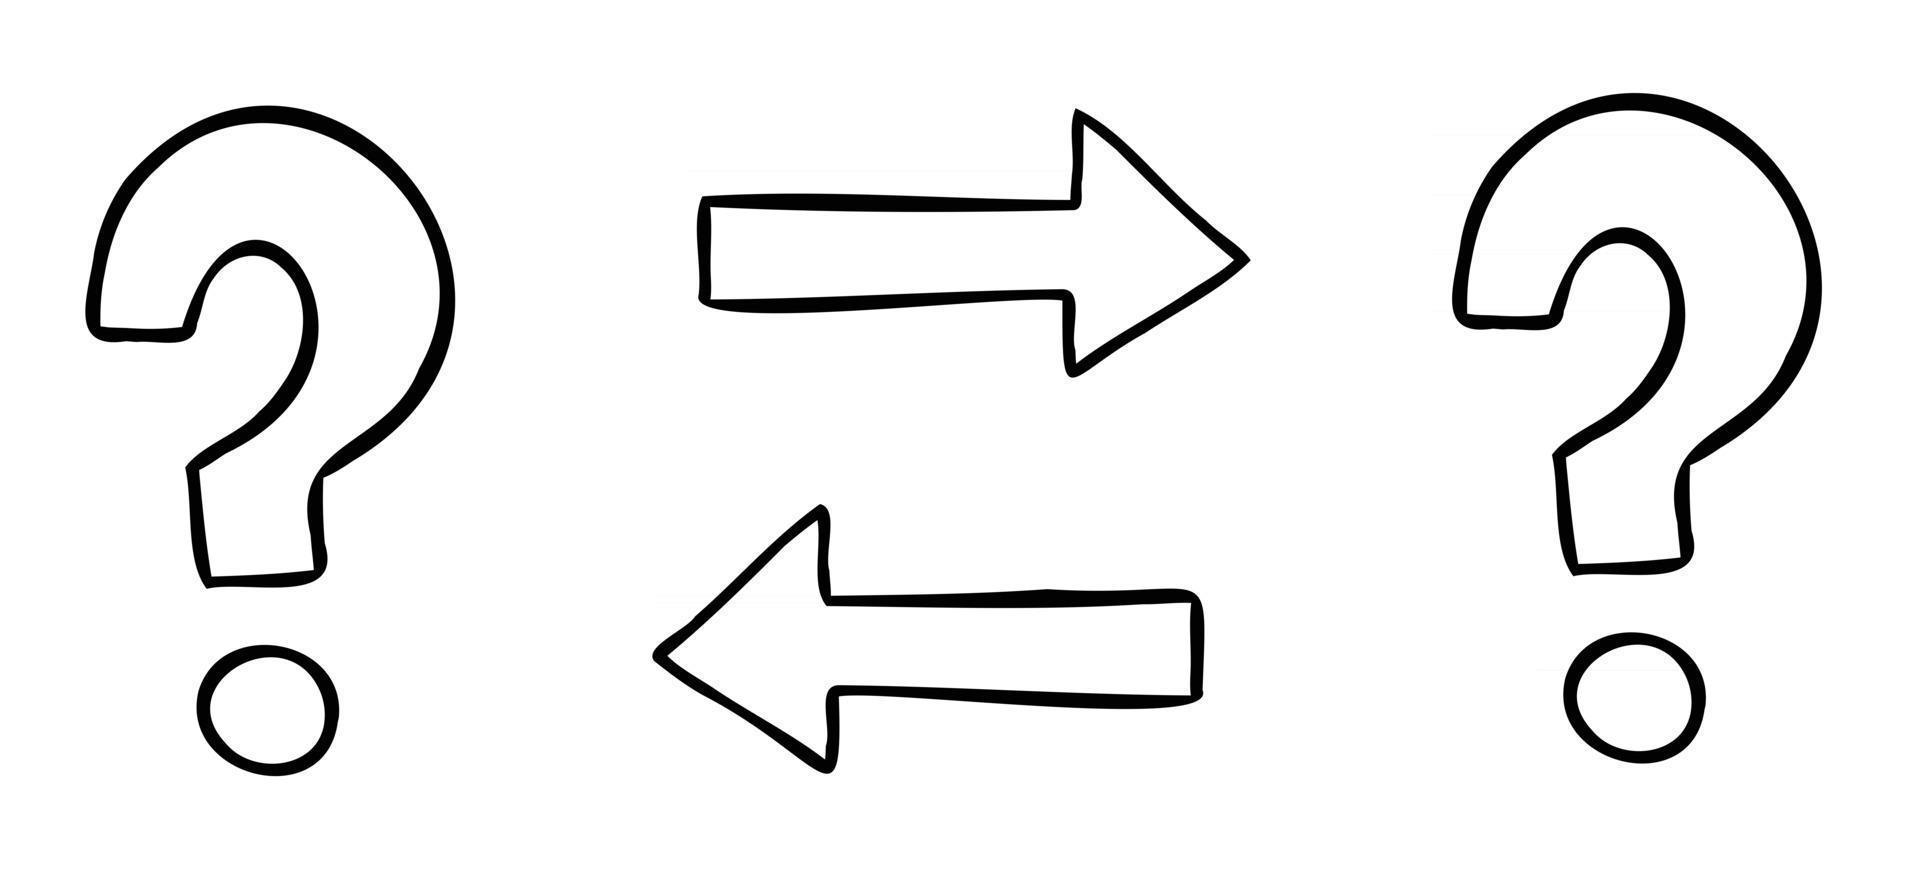 ilustración vectorial de dibujos animados de dos signos de interrogación e intercambio vector